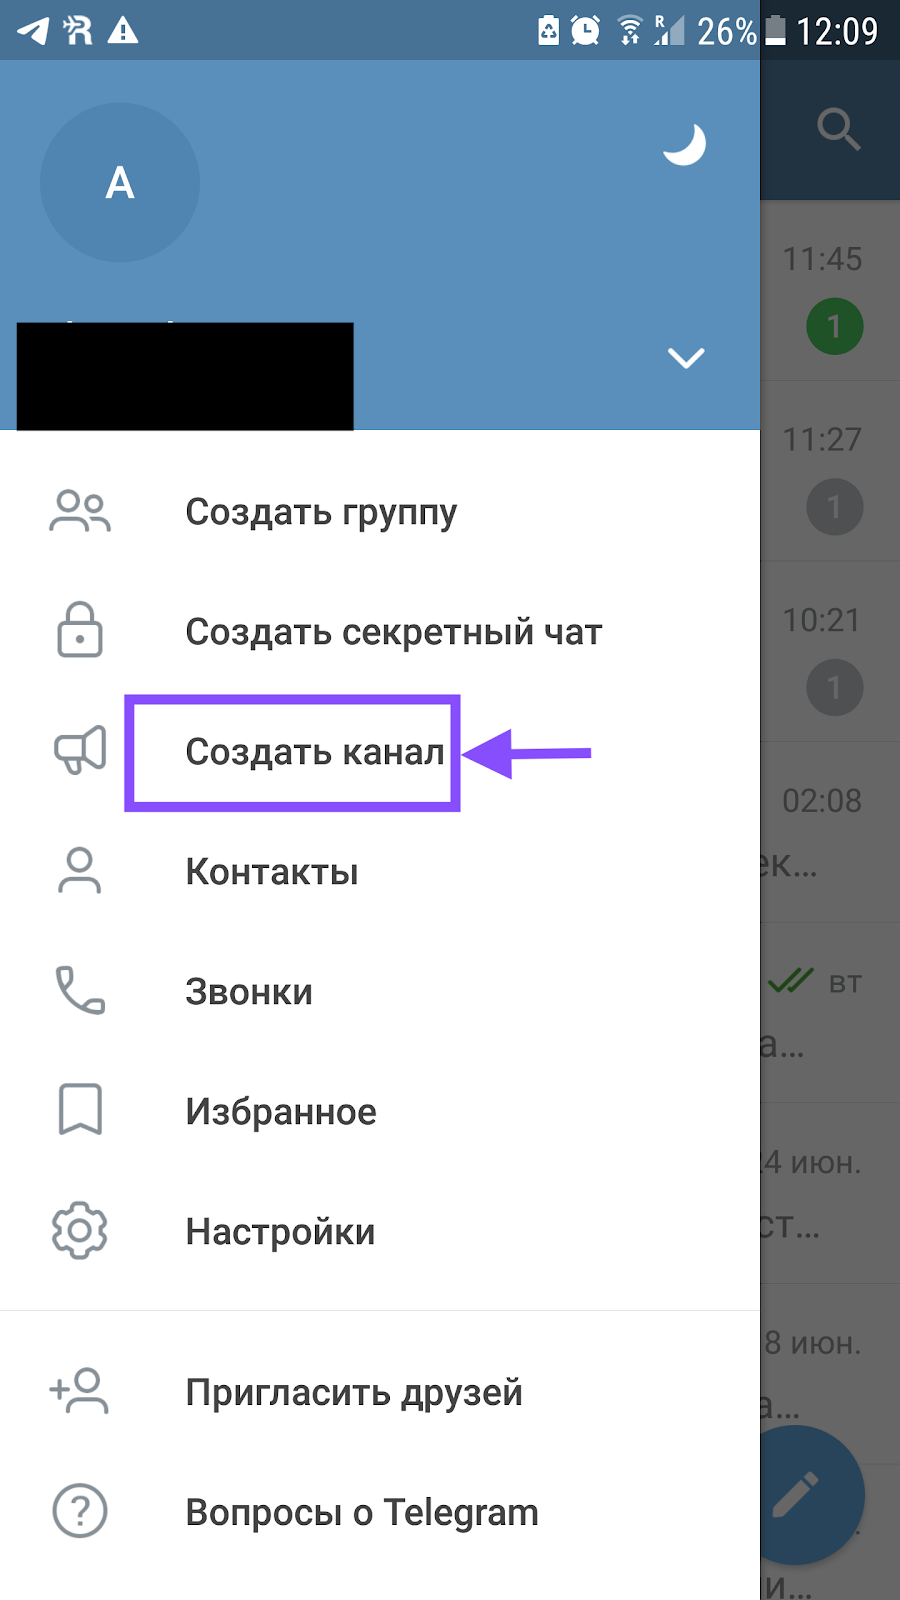 Как сделать меню телеграмма на русском языке андроид фото 111